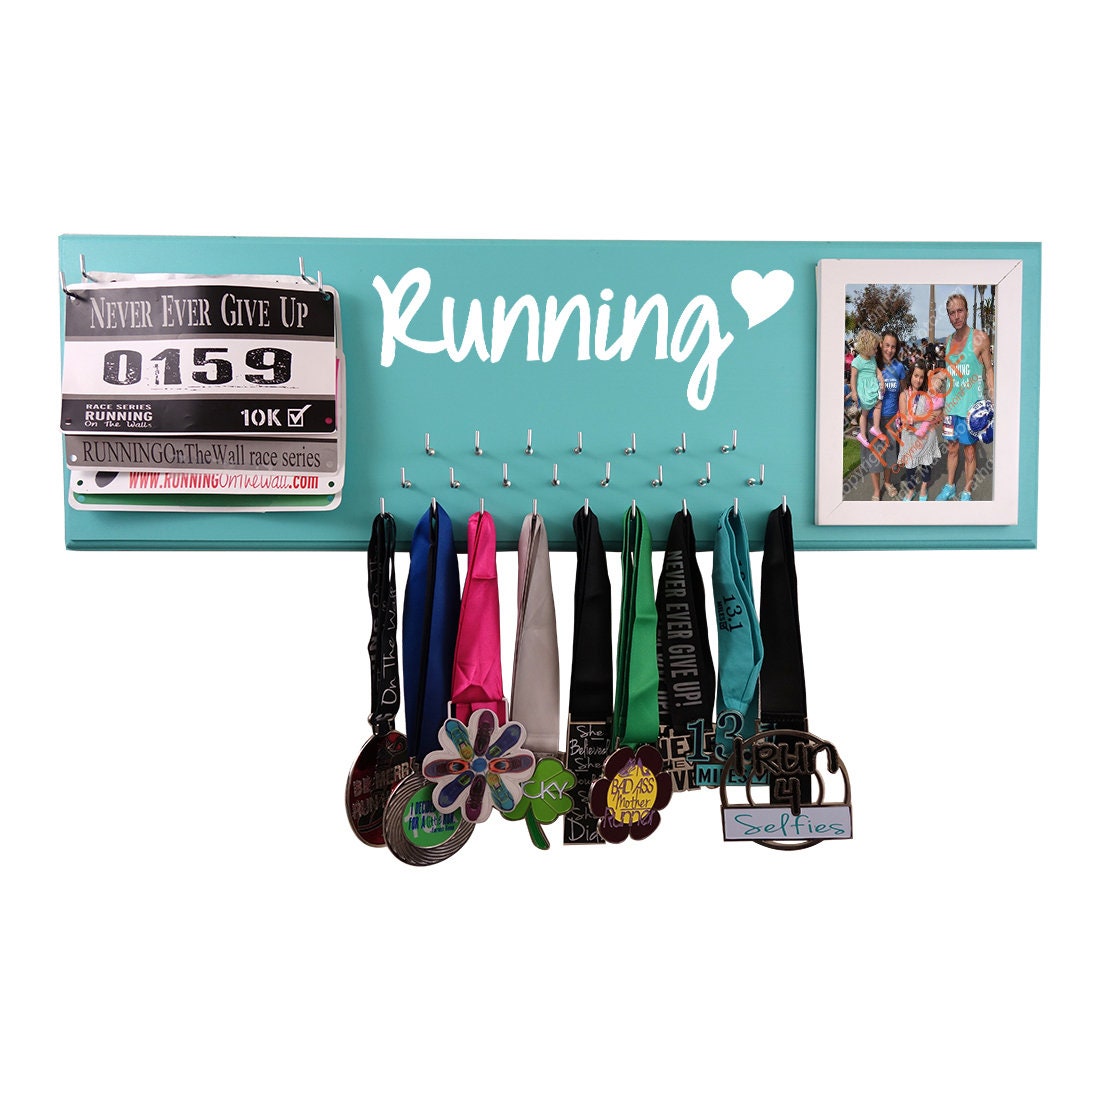 Running Medal Display Holder Running Medal Hanger, Running Medal